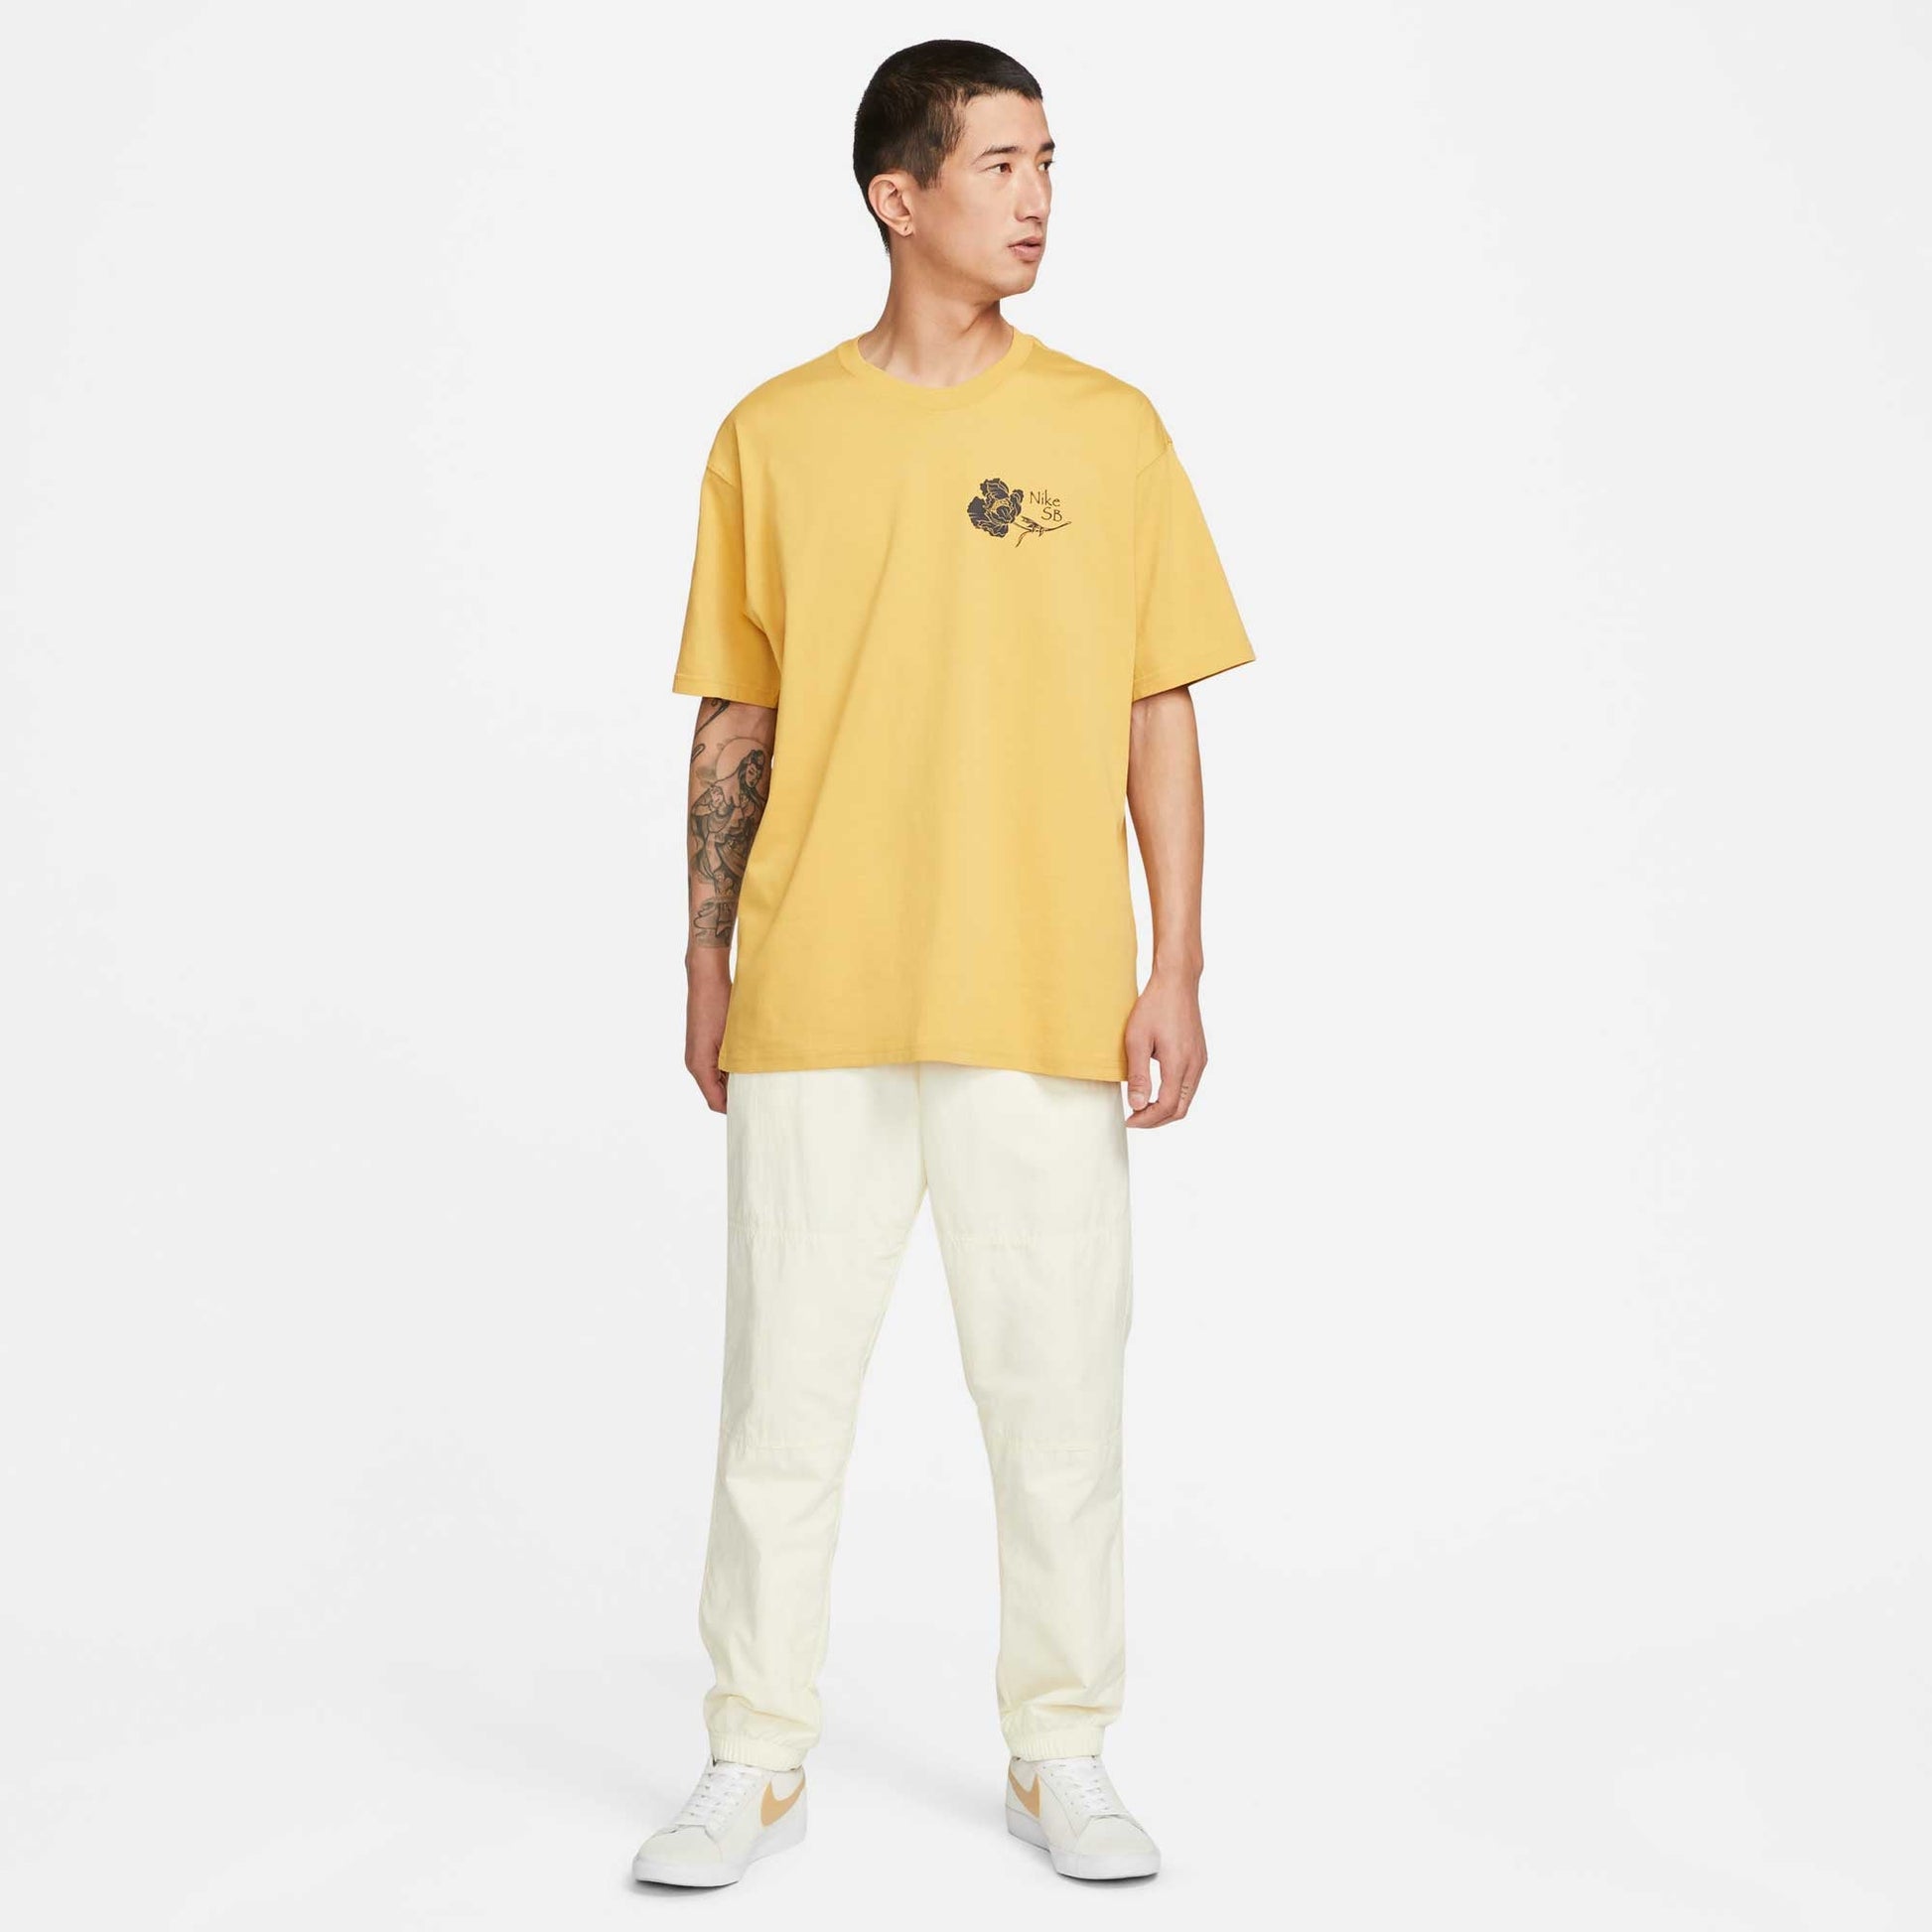 Nike SB Flower Skate T-Shirt, sanded gold - Tiki Room Skateboards - 3